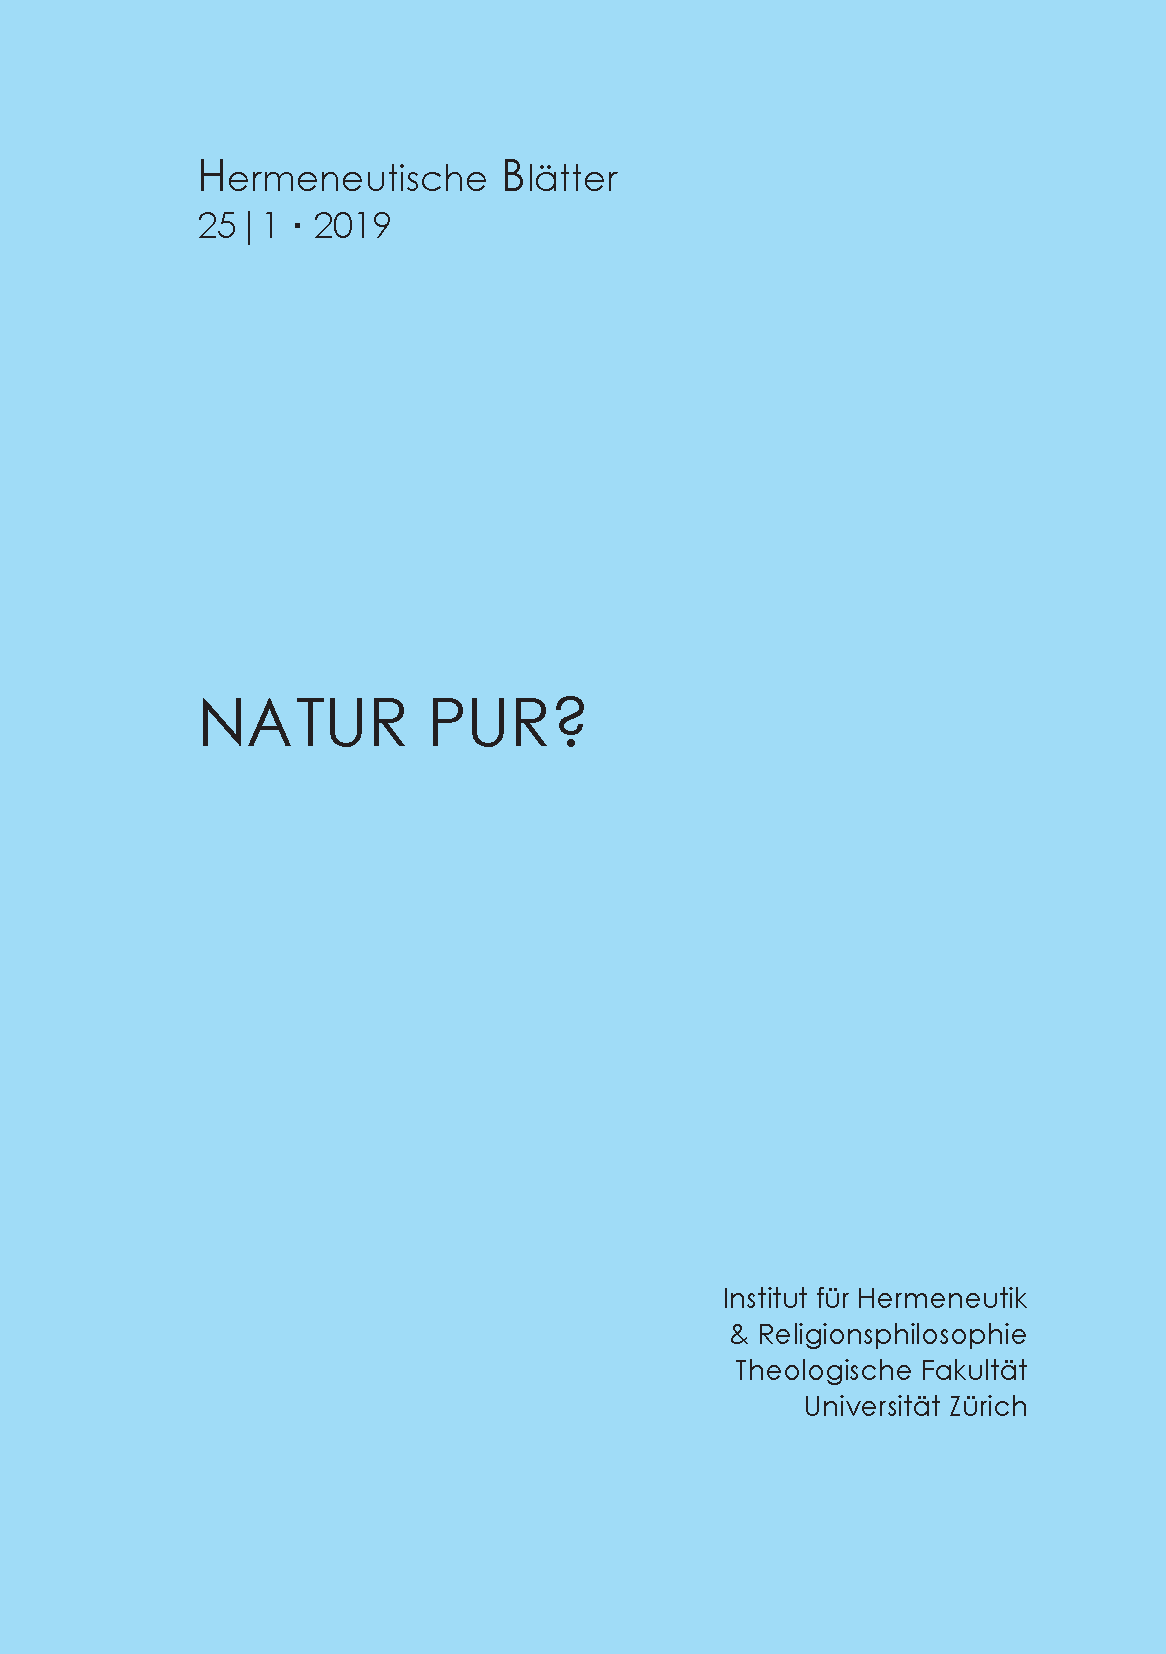 Natur pur?, Hermeneutischen Blätter 25/1 (2019)